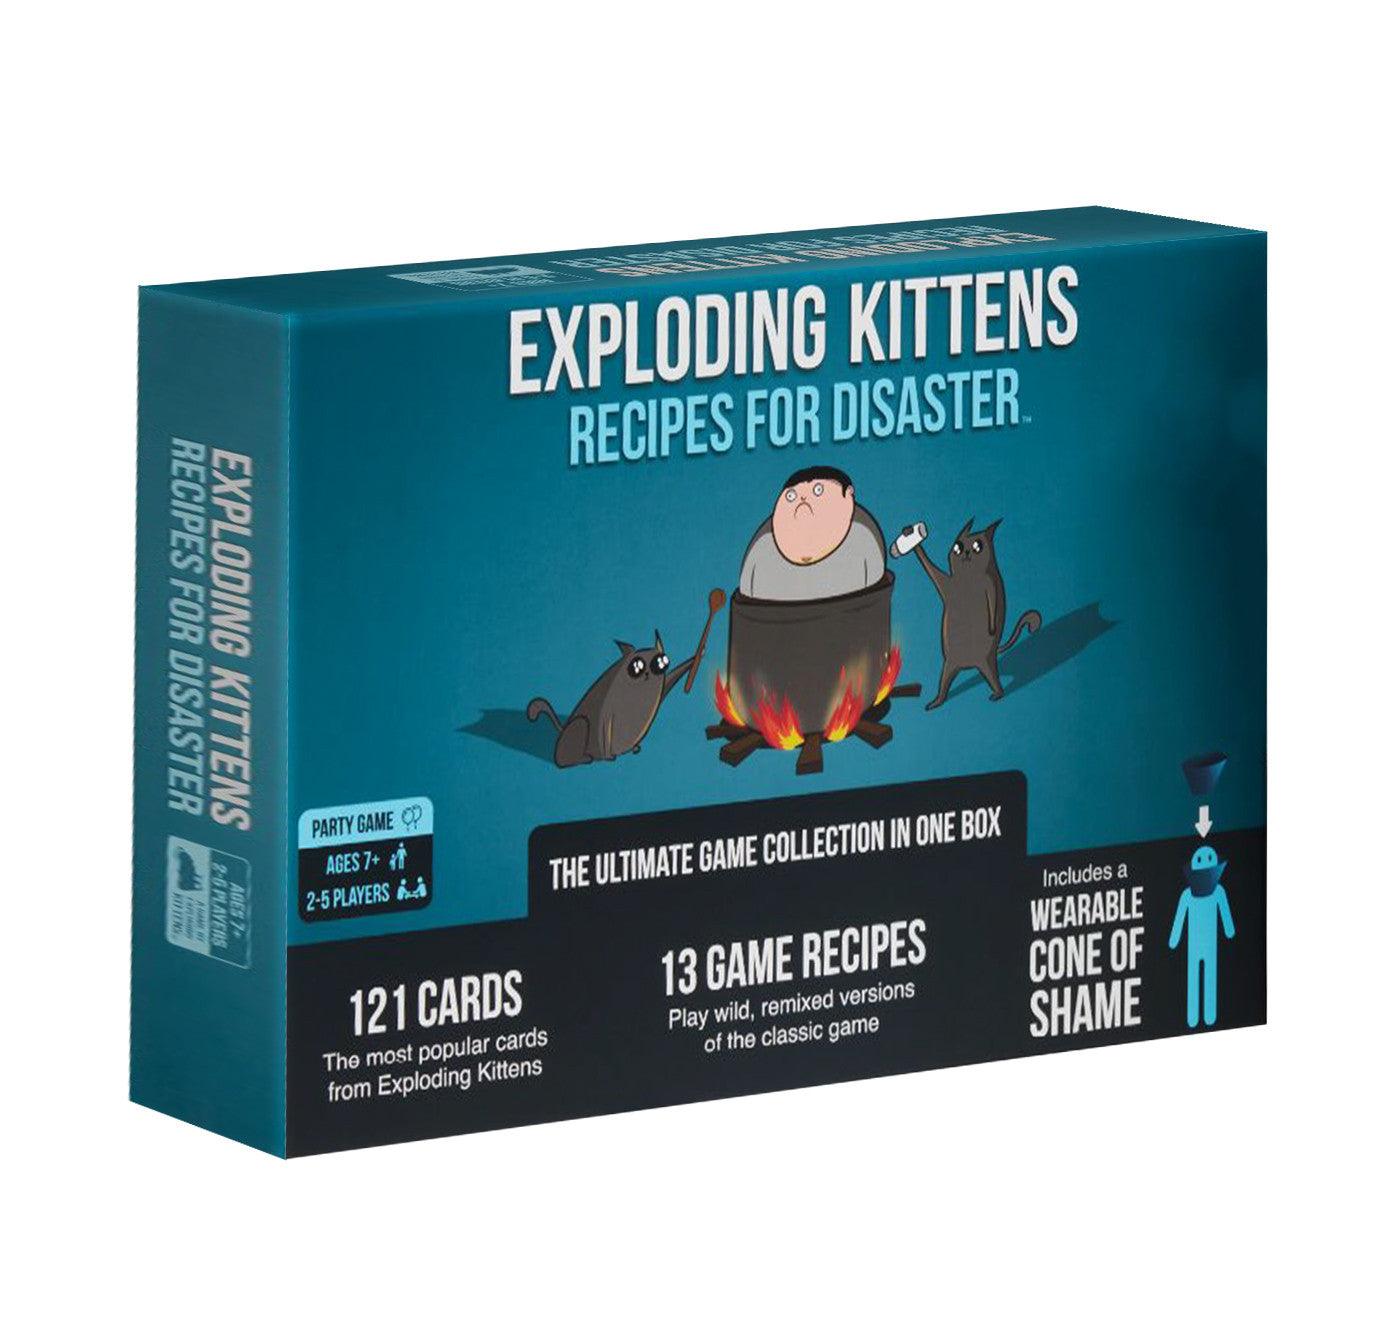 VR-91465 Exploding Kittens Recipes For Disaster - Exploding Kittens - Titan Pop Culture